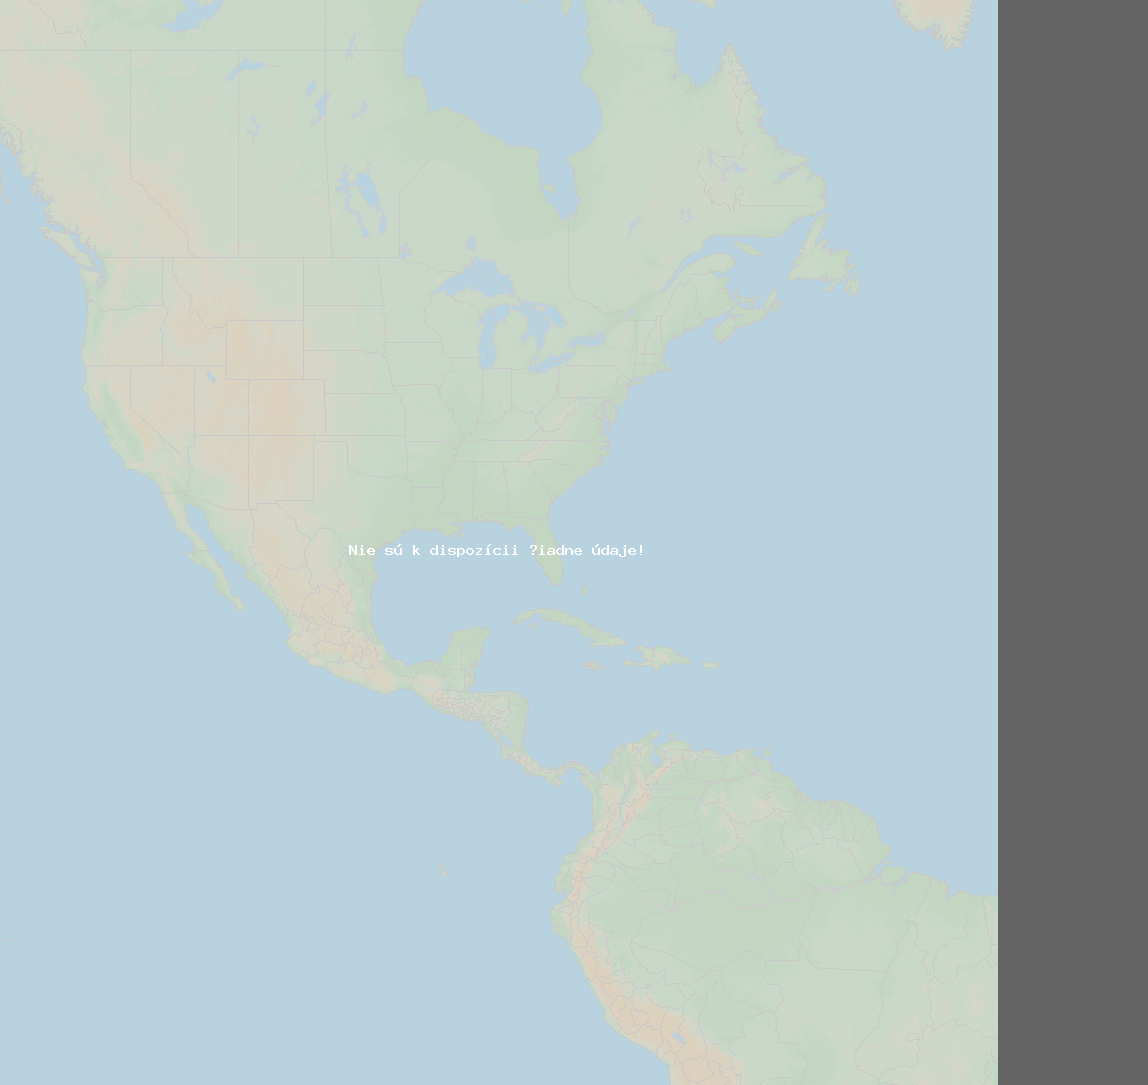 Pomer bleskov (Stanica indianapolis) North America 2021 Február